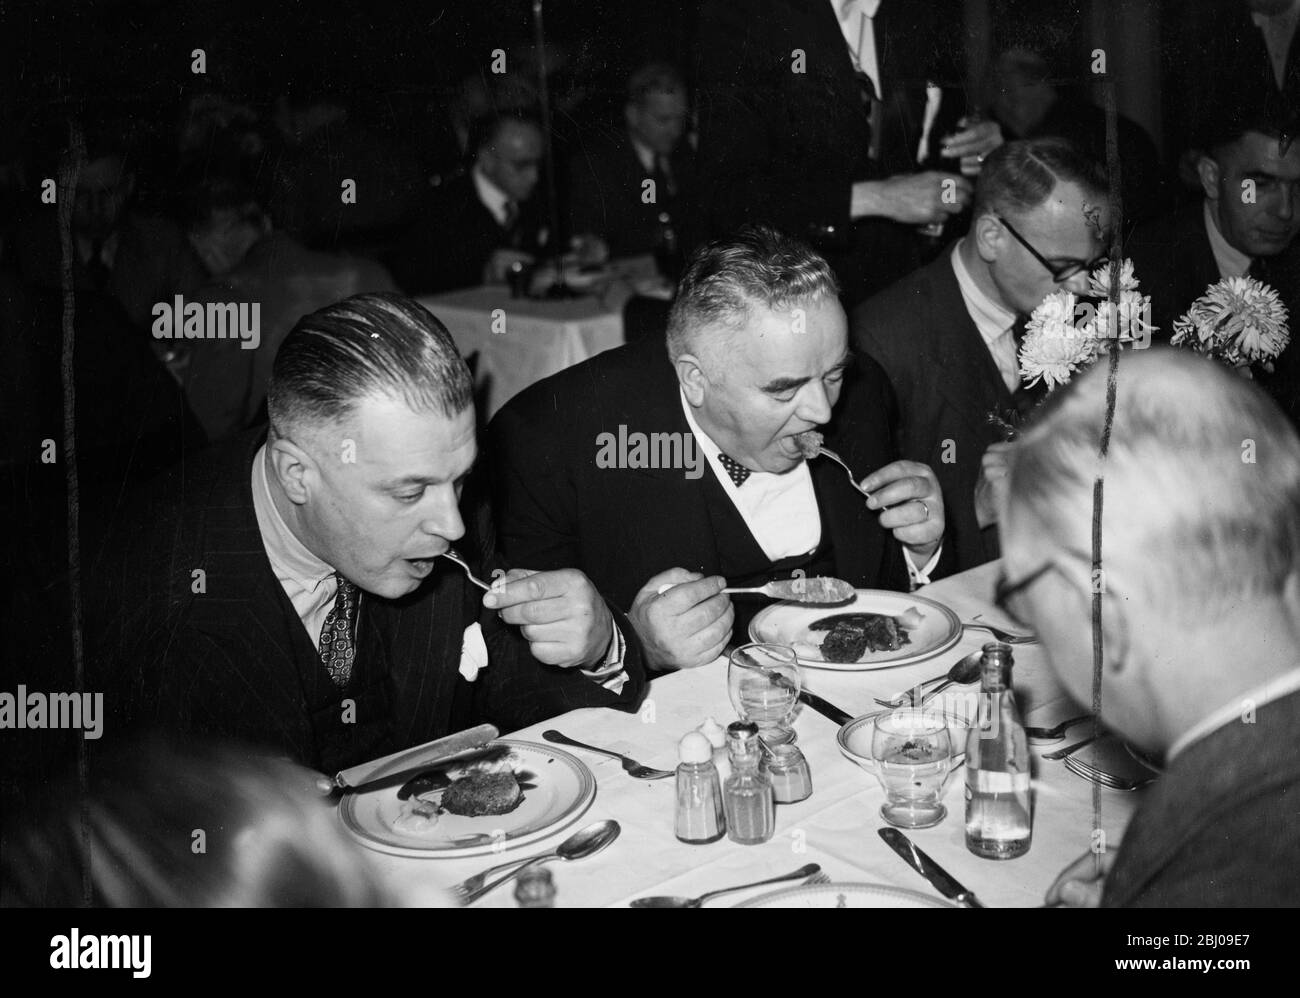 La carne di balene fu servita per la prima volta in un pranzo ufficiale a Londra, quando l'Institute of Refrigeration ha affondato il pranzo d'autunno presso le Connaught Rooms. Dopo il permesso del Ministero del cibo, l'hamburger di balene apparve sul menu come un piatto extra, descritto come essere nella natura di un esperimento. Circa 400 ospiti hanno assaggiato il nuovo piatto che è stato preparato e servito sulle stesse linee di un hamburger. - 29 novembre 1946 Foto Stock